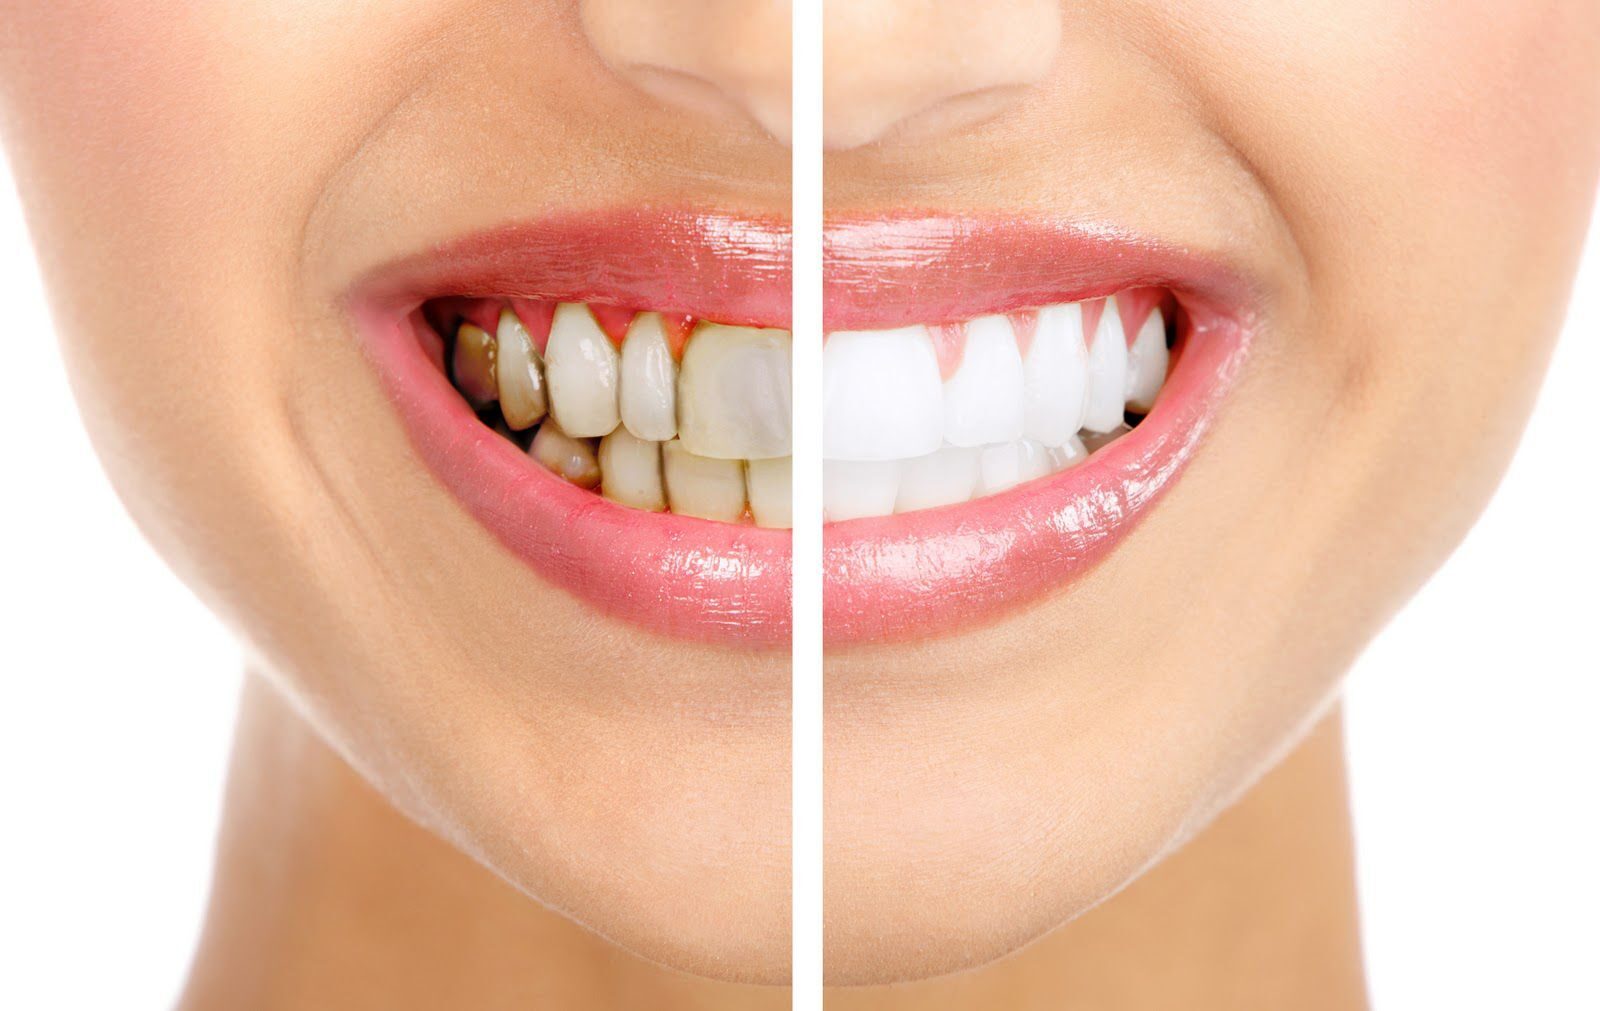 Tẩy trắng răng bao nhiêu tiền siêu tiết kiệm và không gây ê buốt?